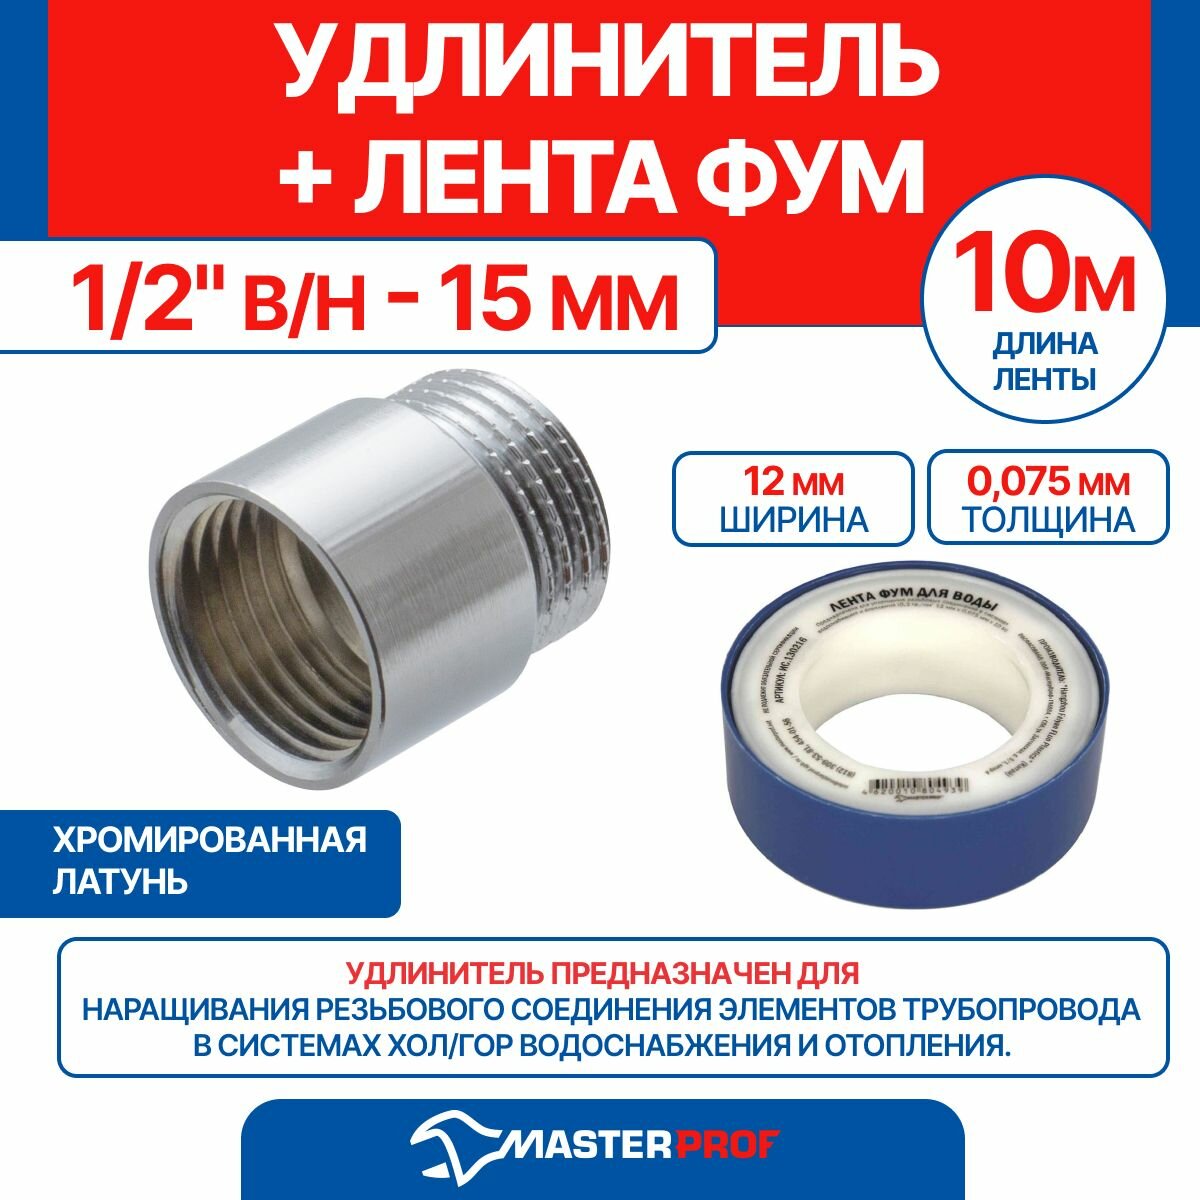 Удлинитель 1/2" в/н - 15 мм (хром) + лента ФУМ 10 м